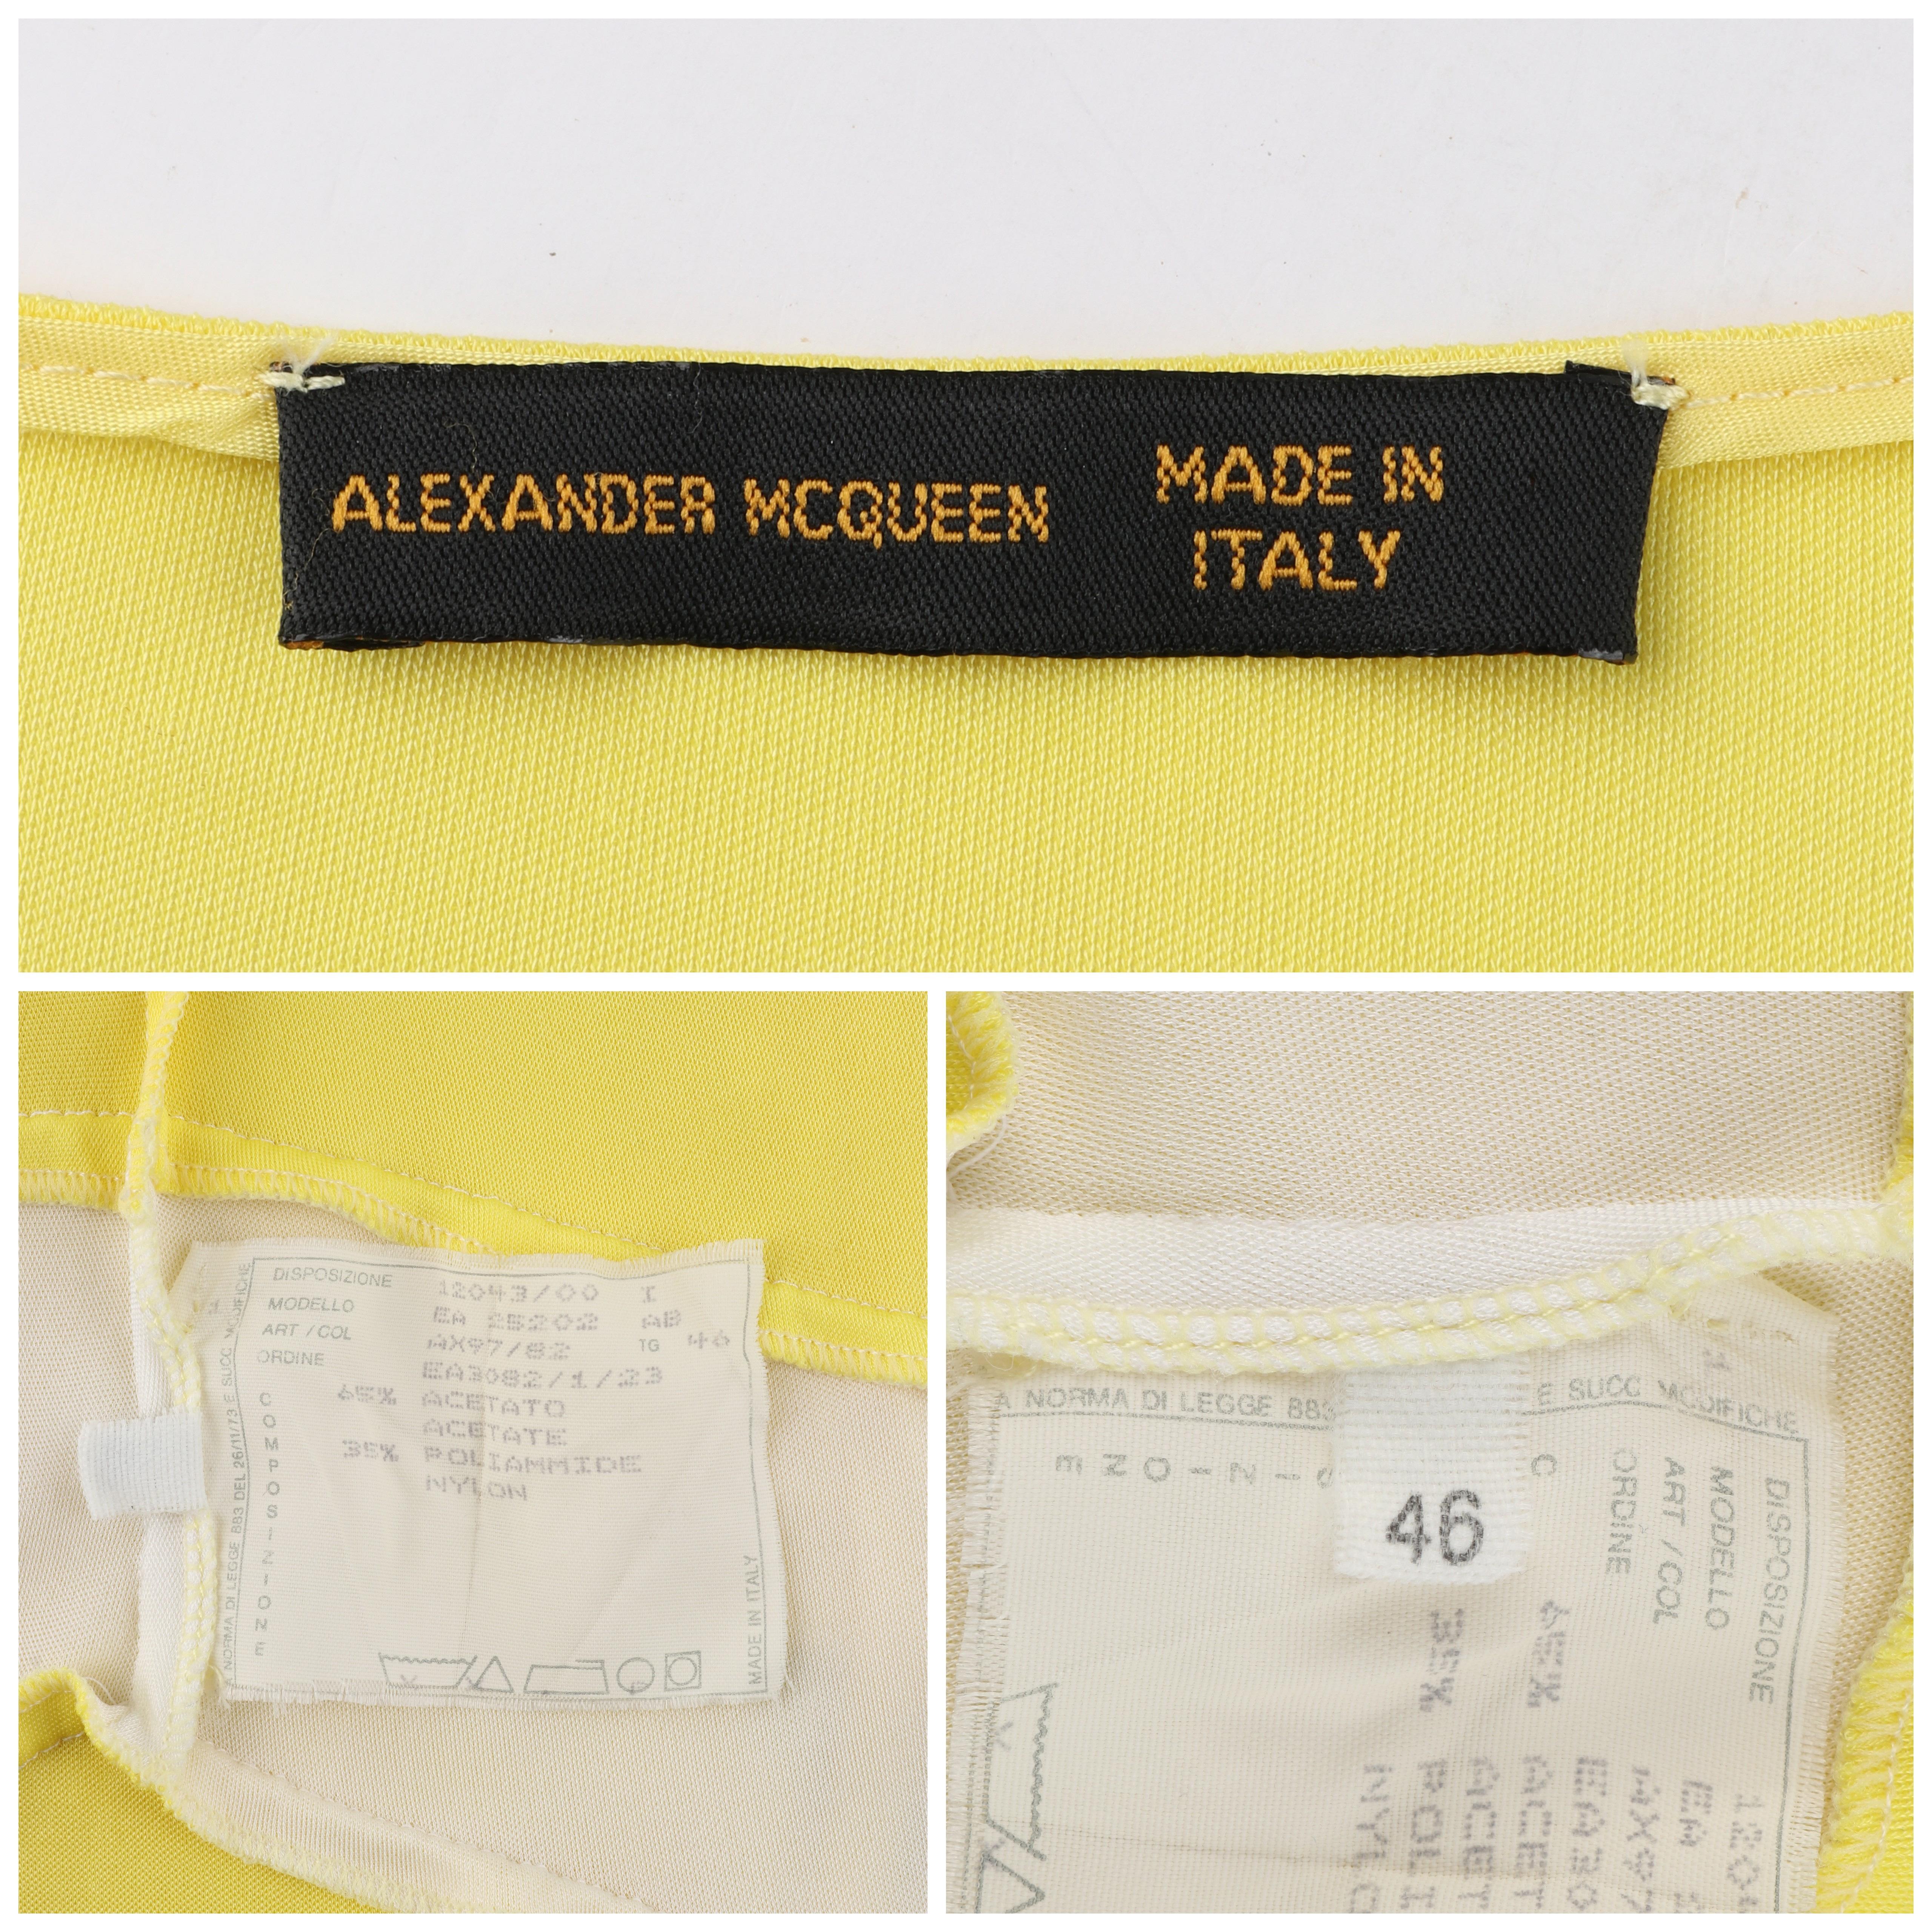 ALEXANDER McQUEEN S/S 1998 